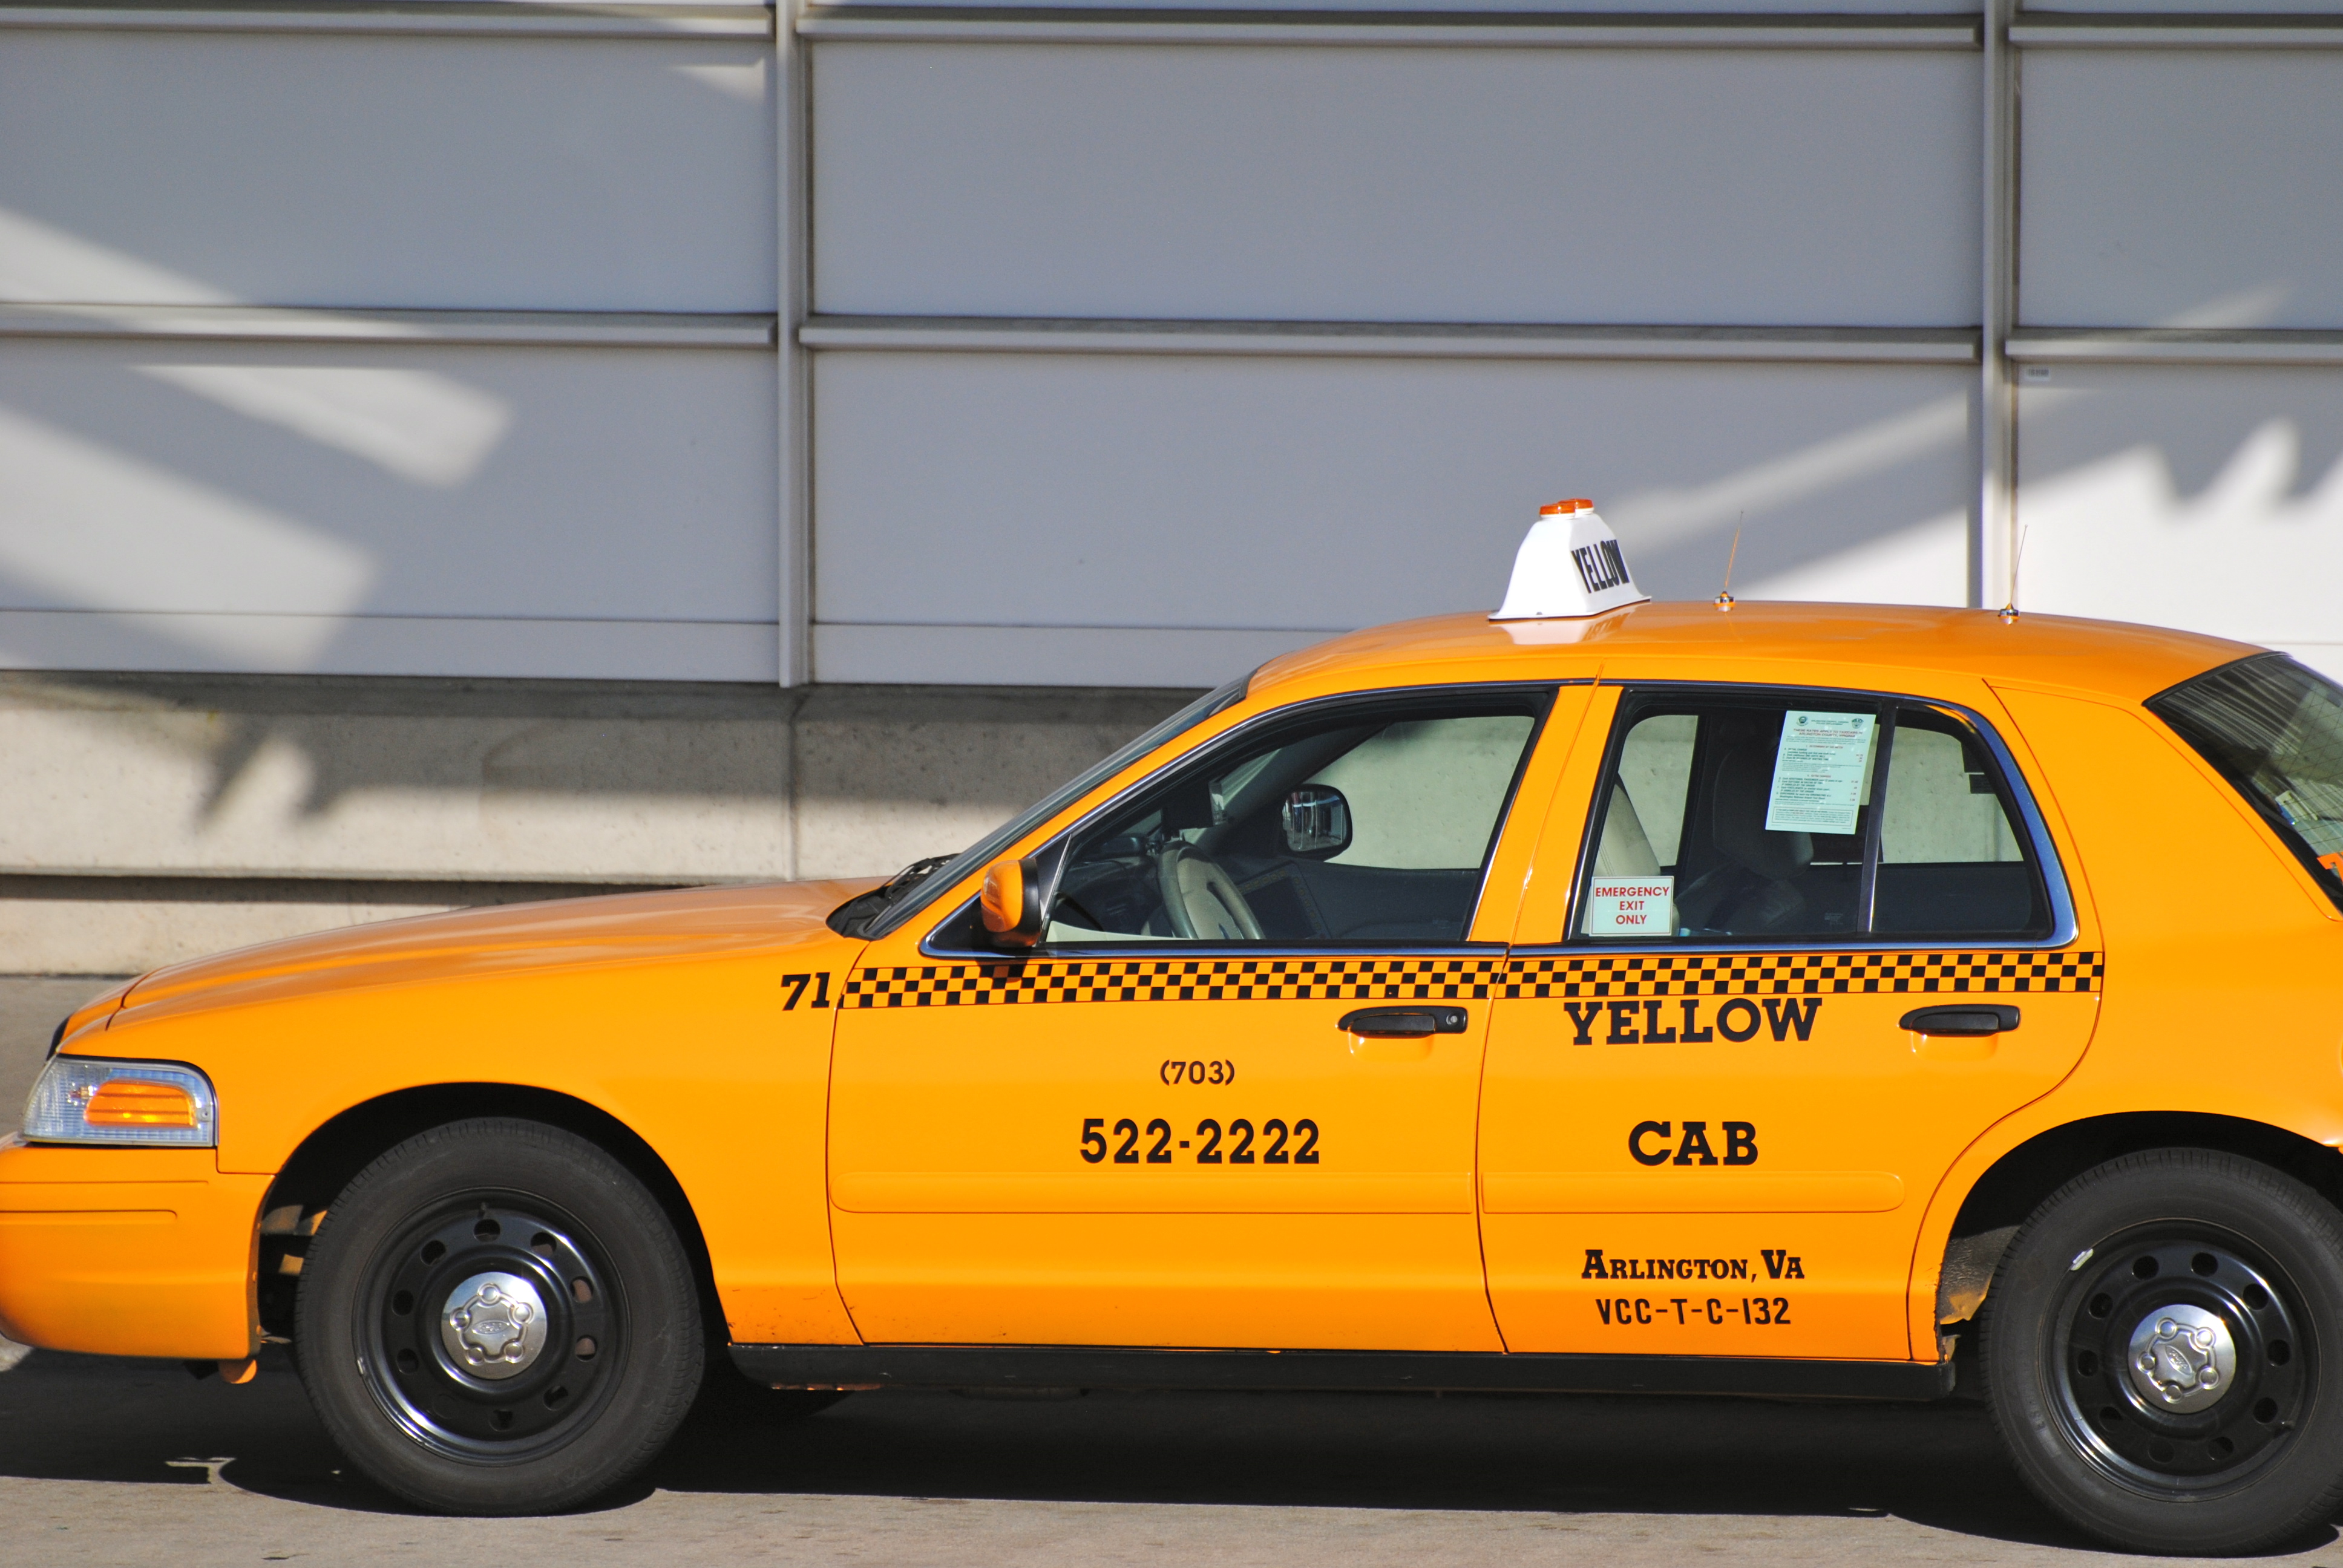 1 ру такси. Такси. Желтое такси. Цвет такси. Такси желтого цвета.